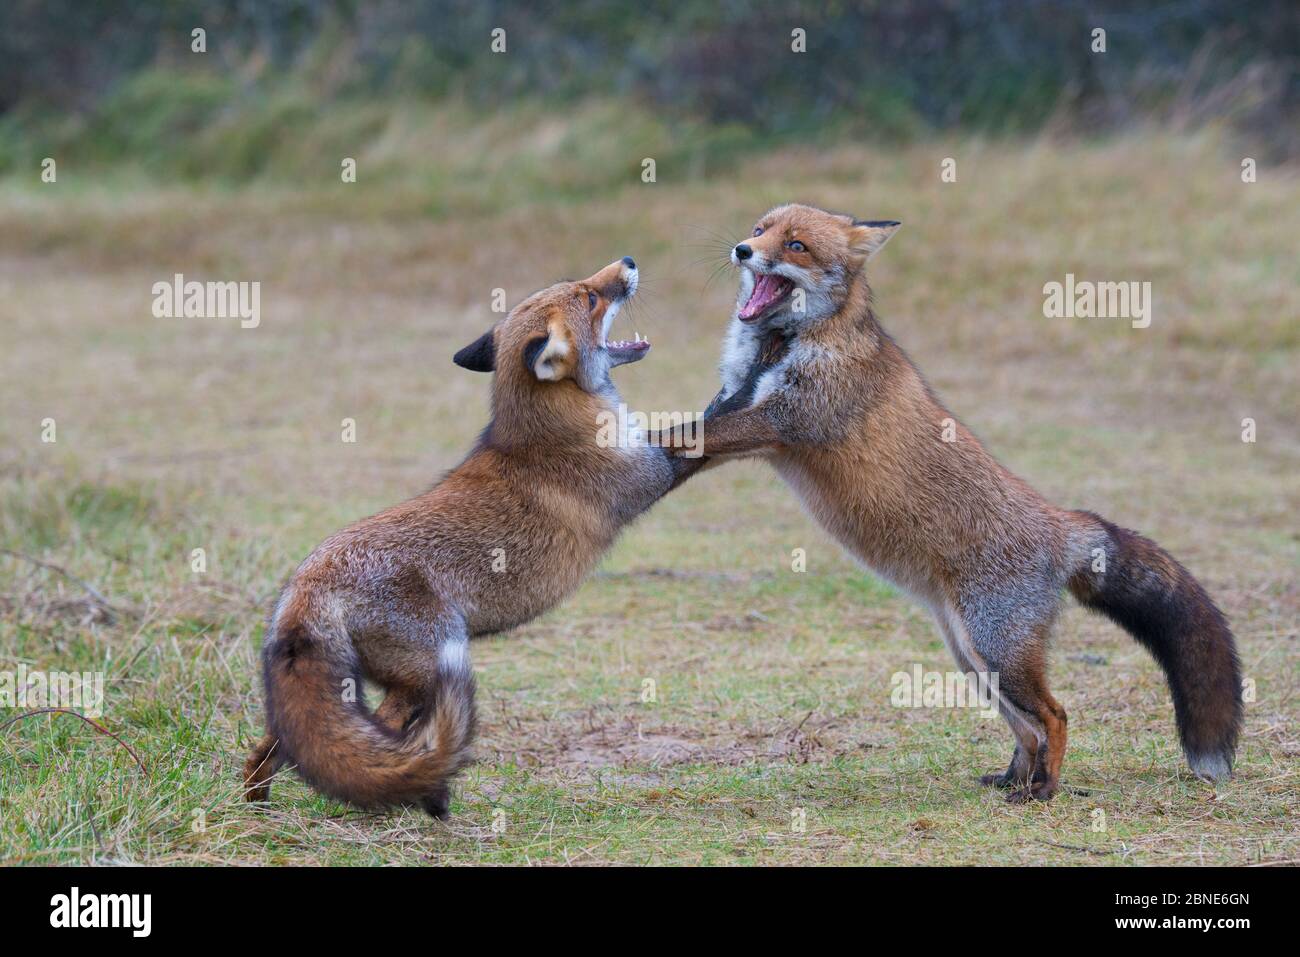 Zwei rote Füchse (Vulpes vulpes) kämpfen, Amsterdamse Waterleidingduinen, in der nähe von Zandvoort, Niederlande, November. Stockfoto